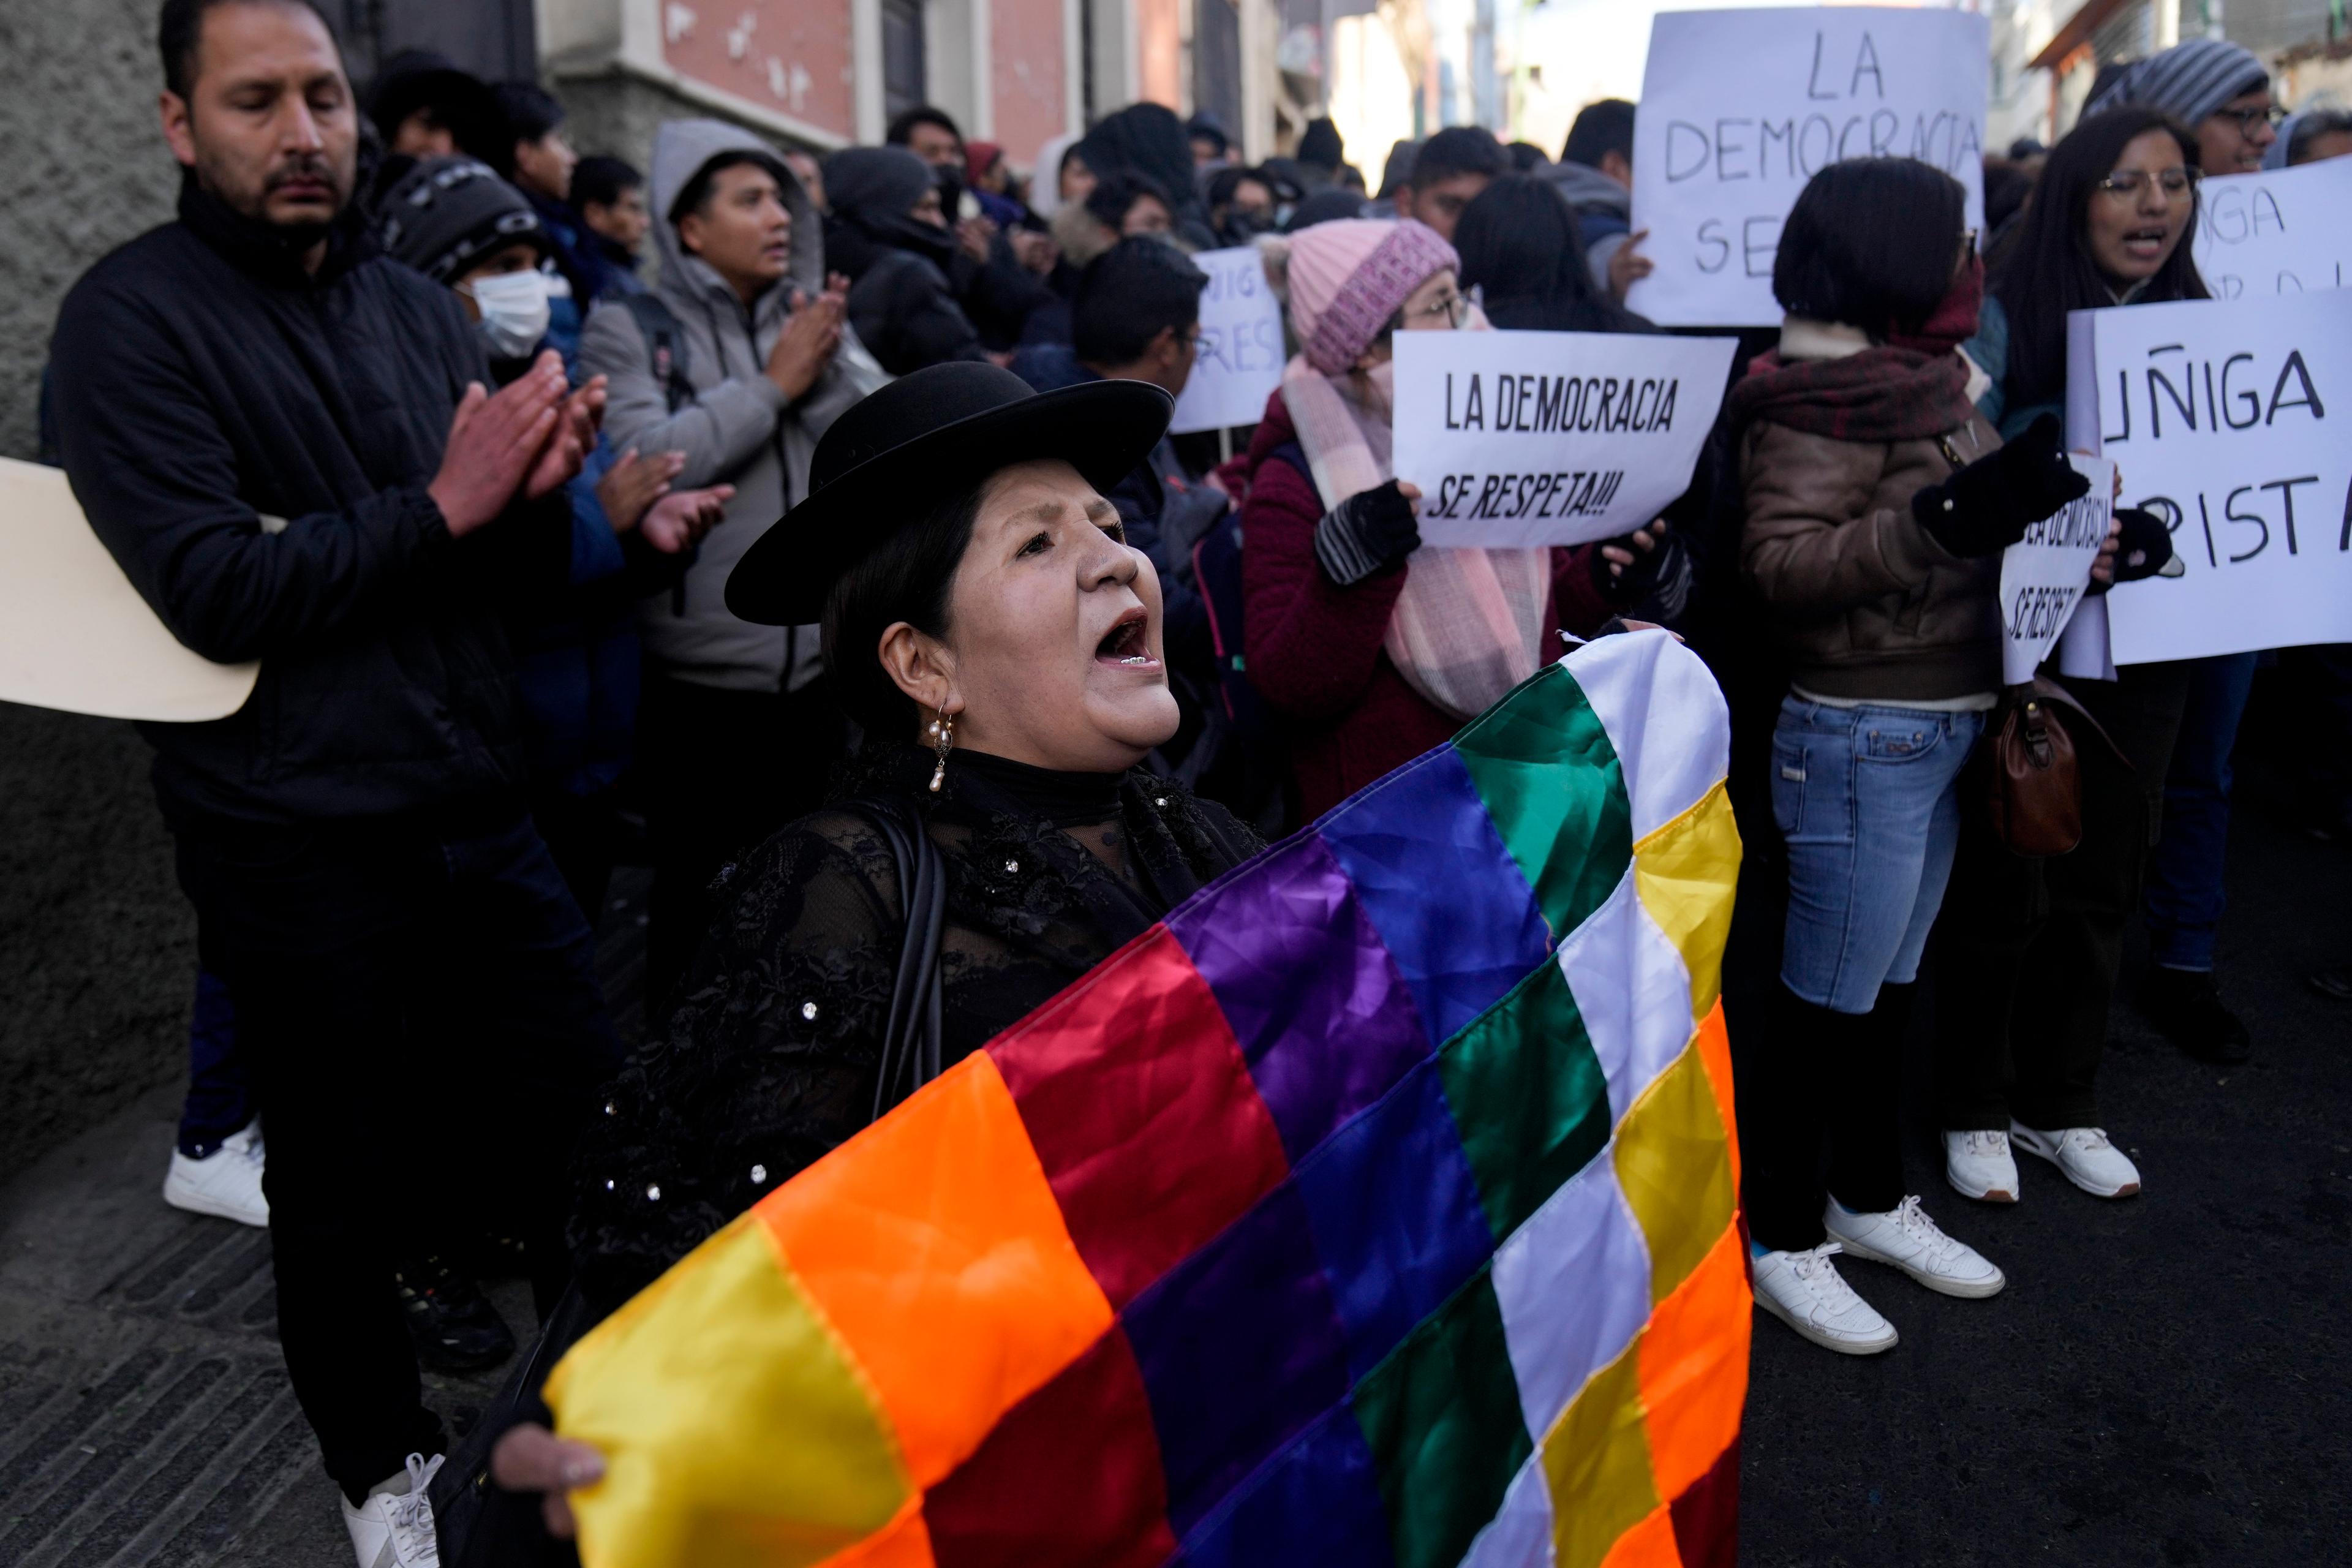 Anhängare till president Arce har tagit sig ut på gatorna för att visa sitt stöd. Foto: Juan Karita/AP/TT